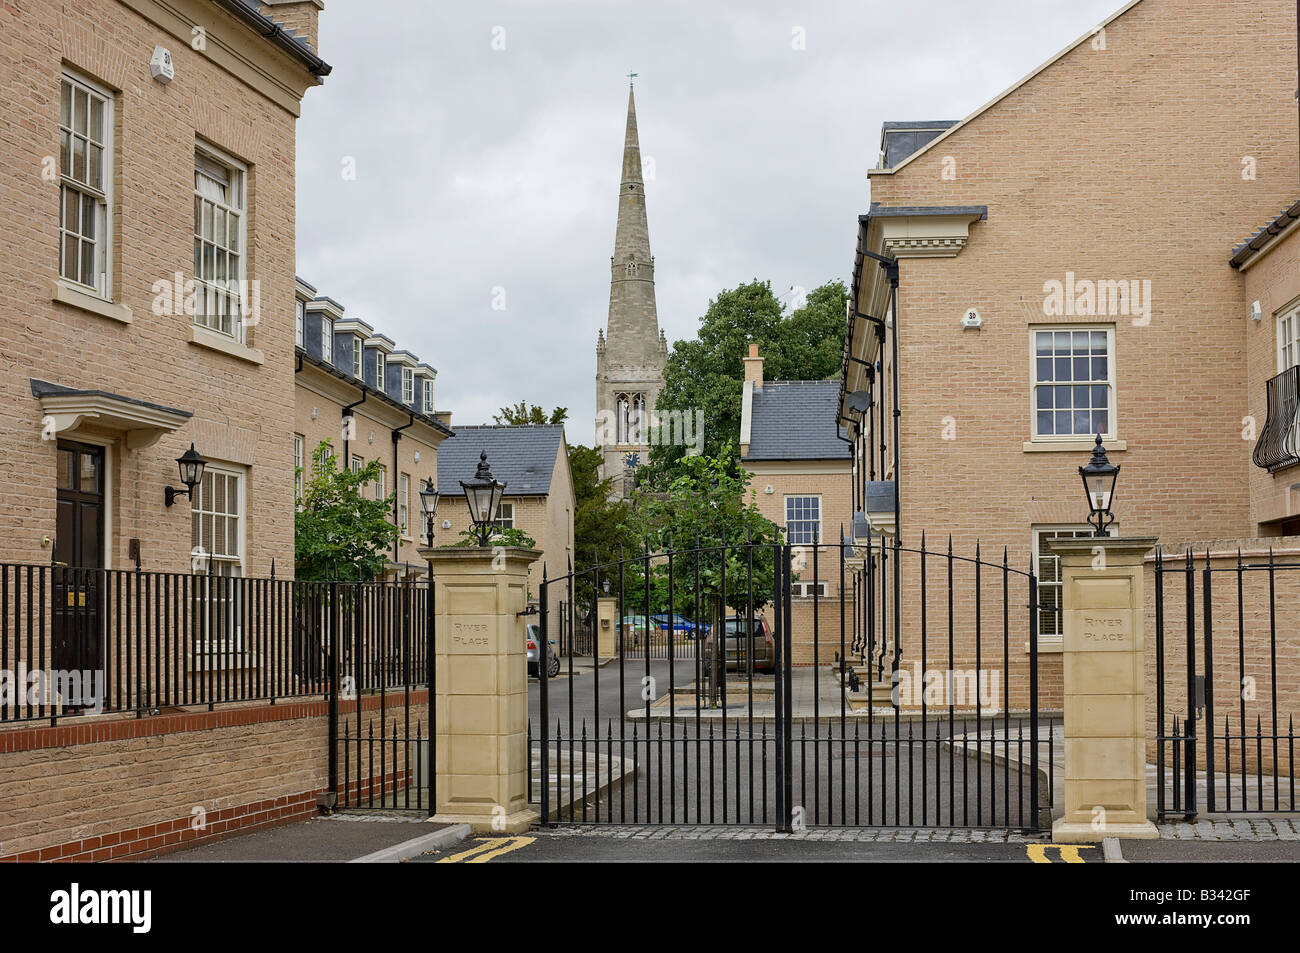 St Ives storica chiesa parrocchiale vista dall'ingresso per gli appartamenti di recente costruzione. Foto Stock